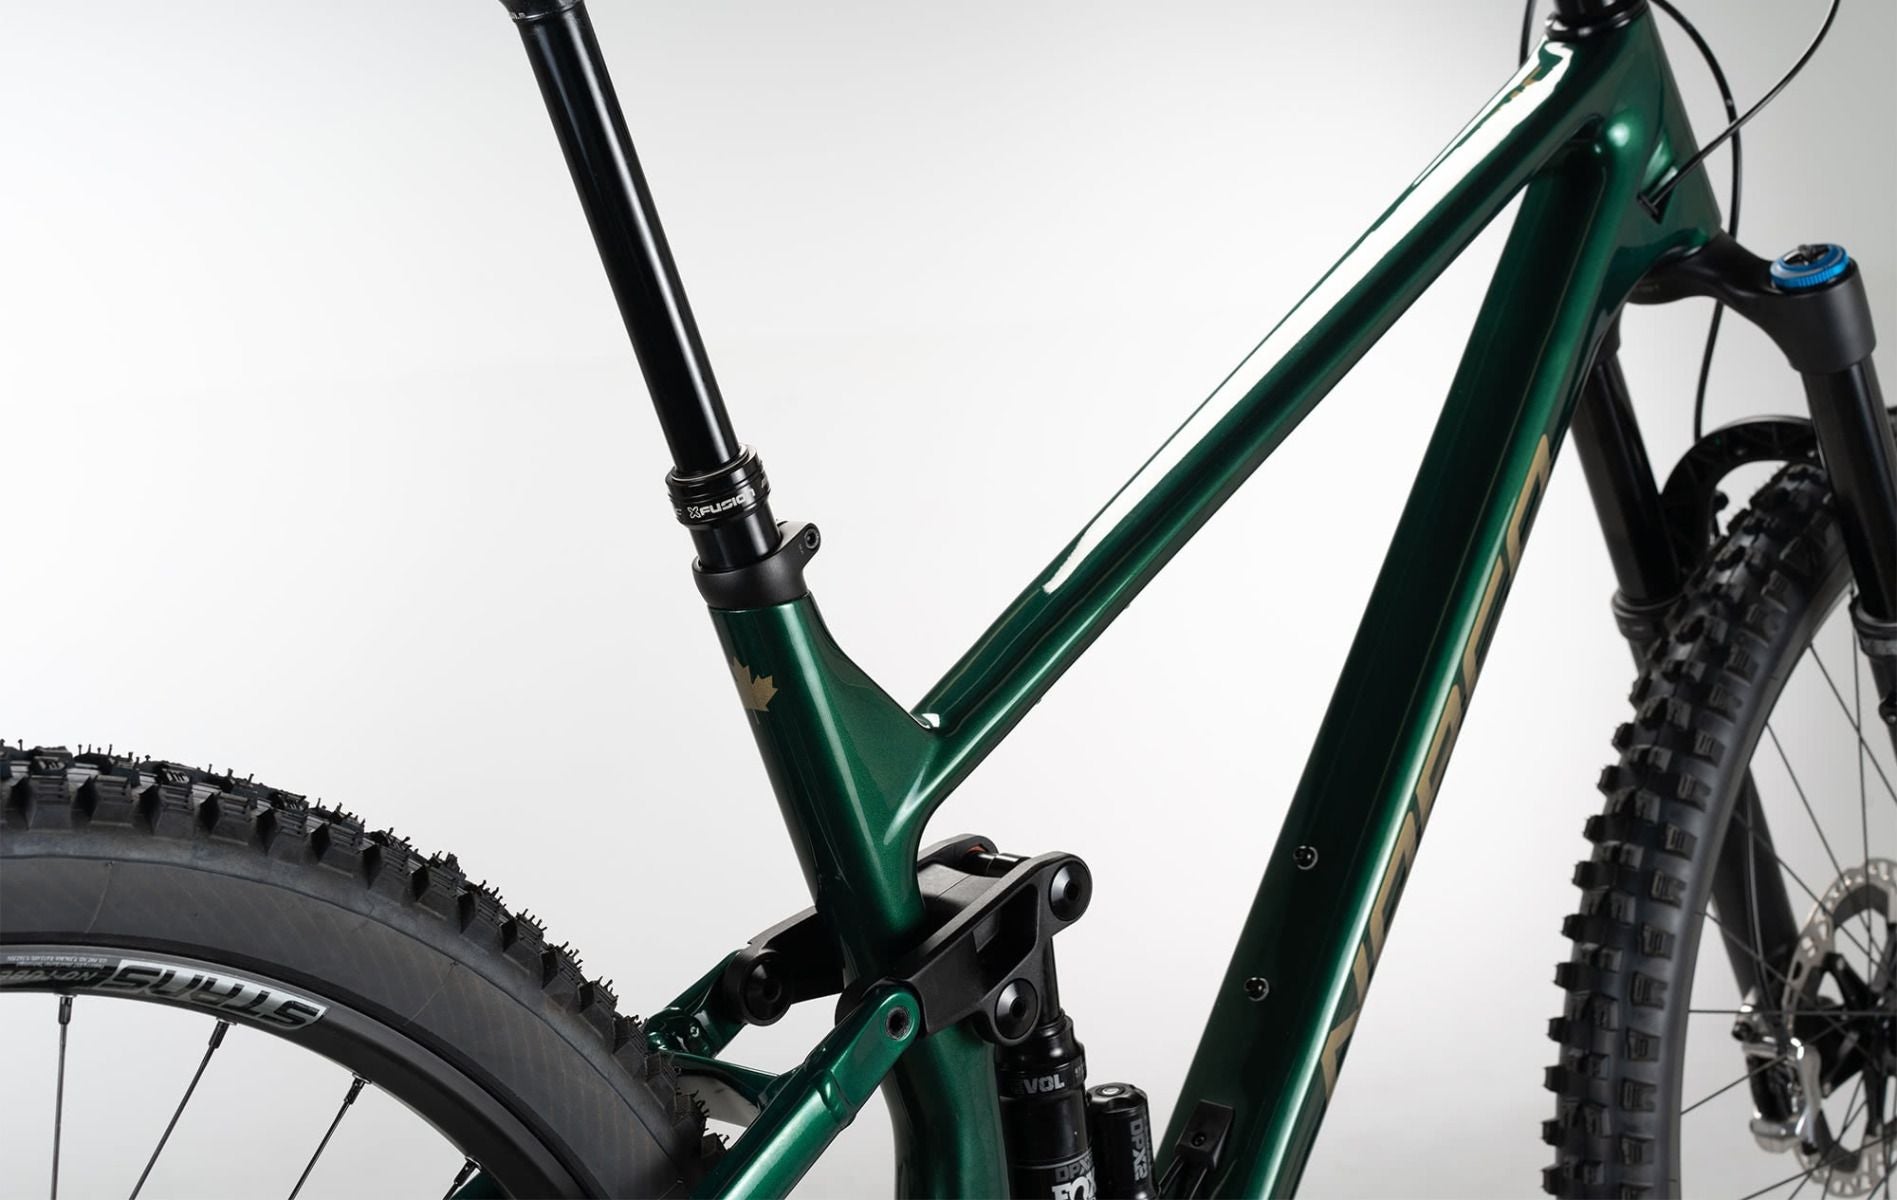 norco-mountain-bike-optic-c1-shimano-green-copper-1